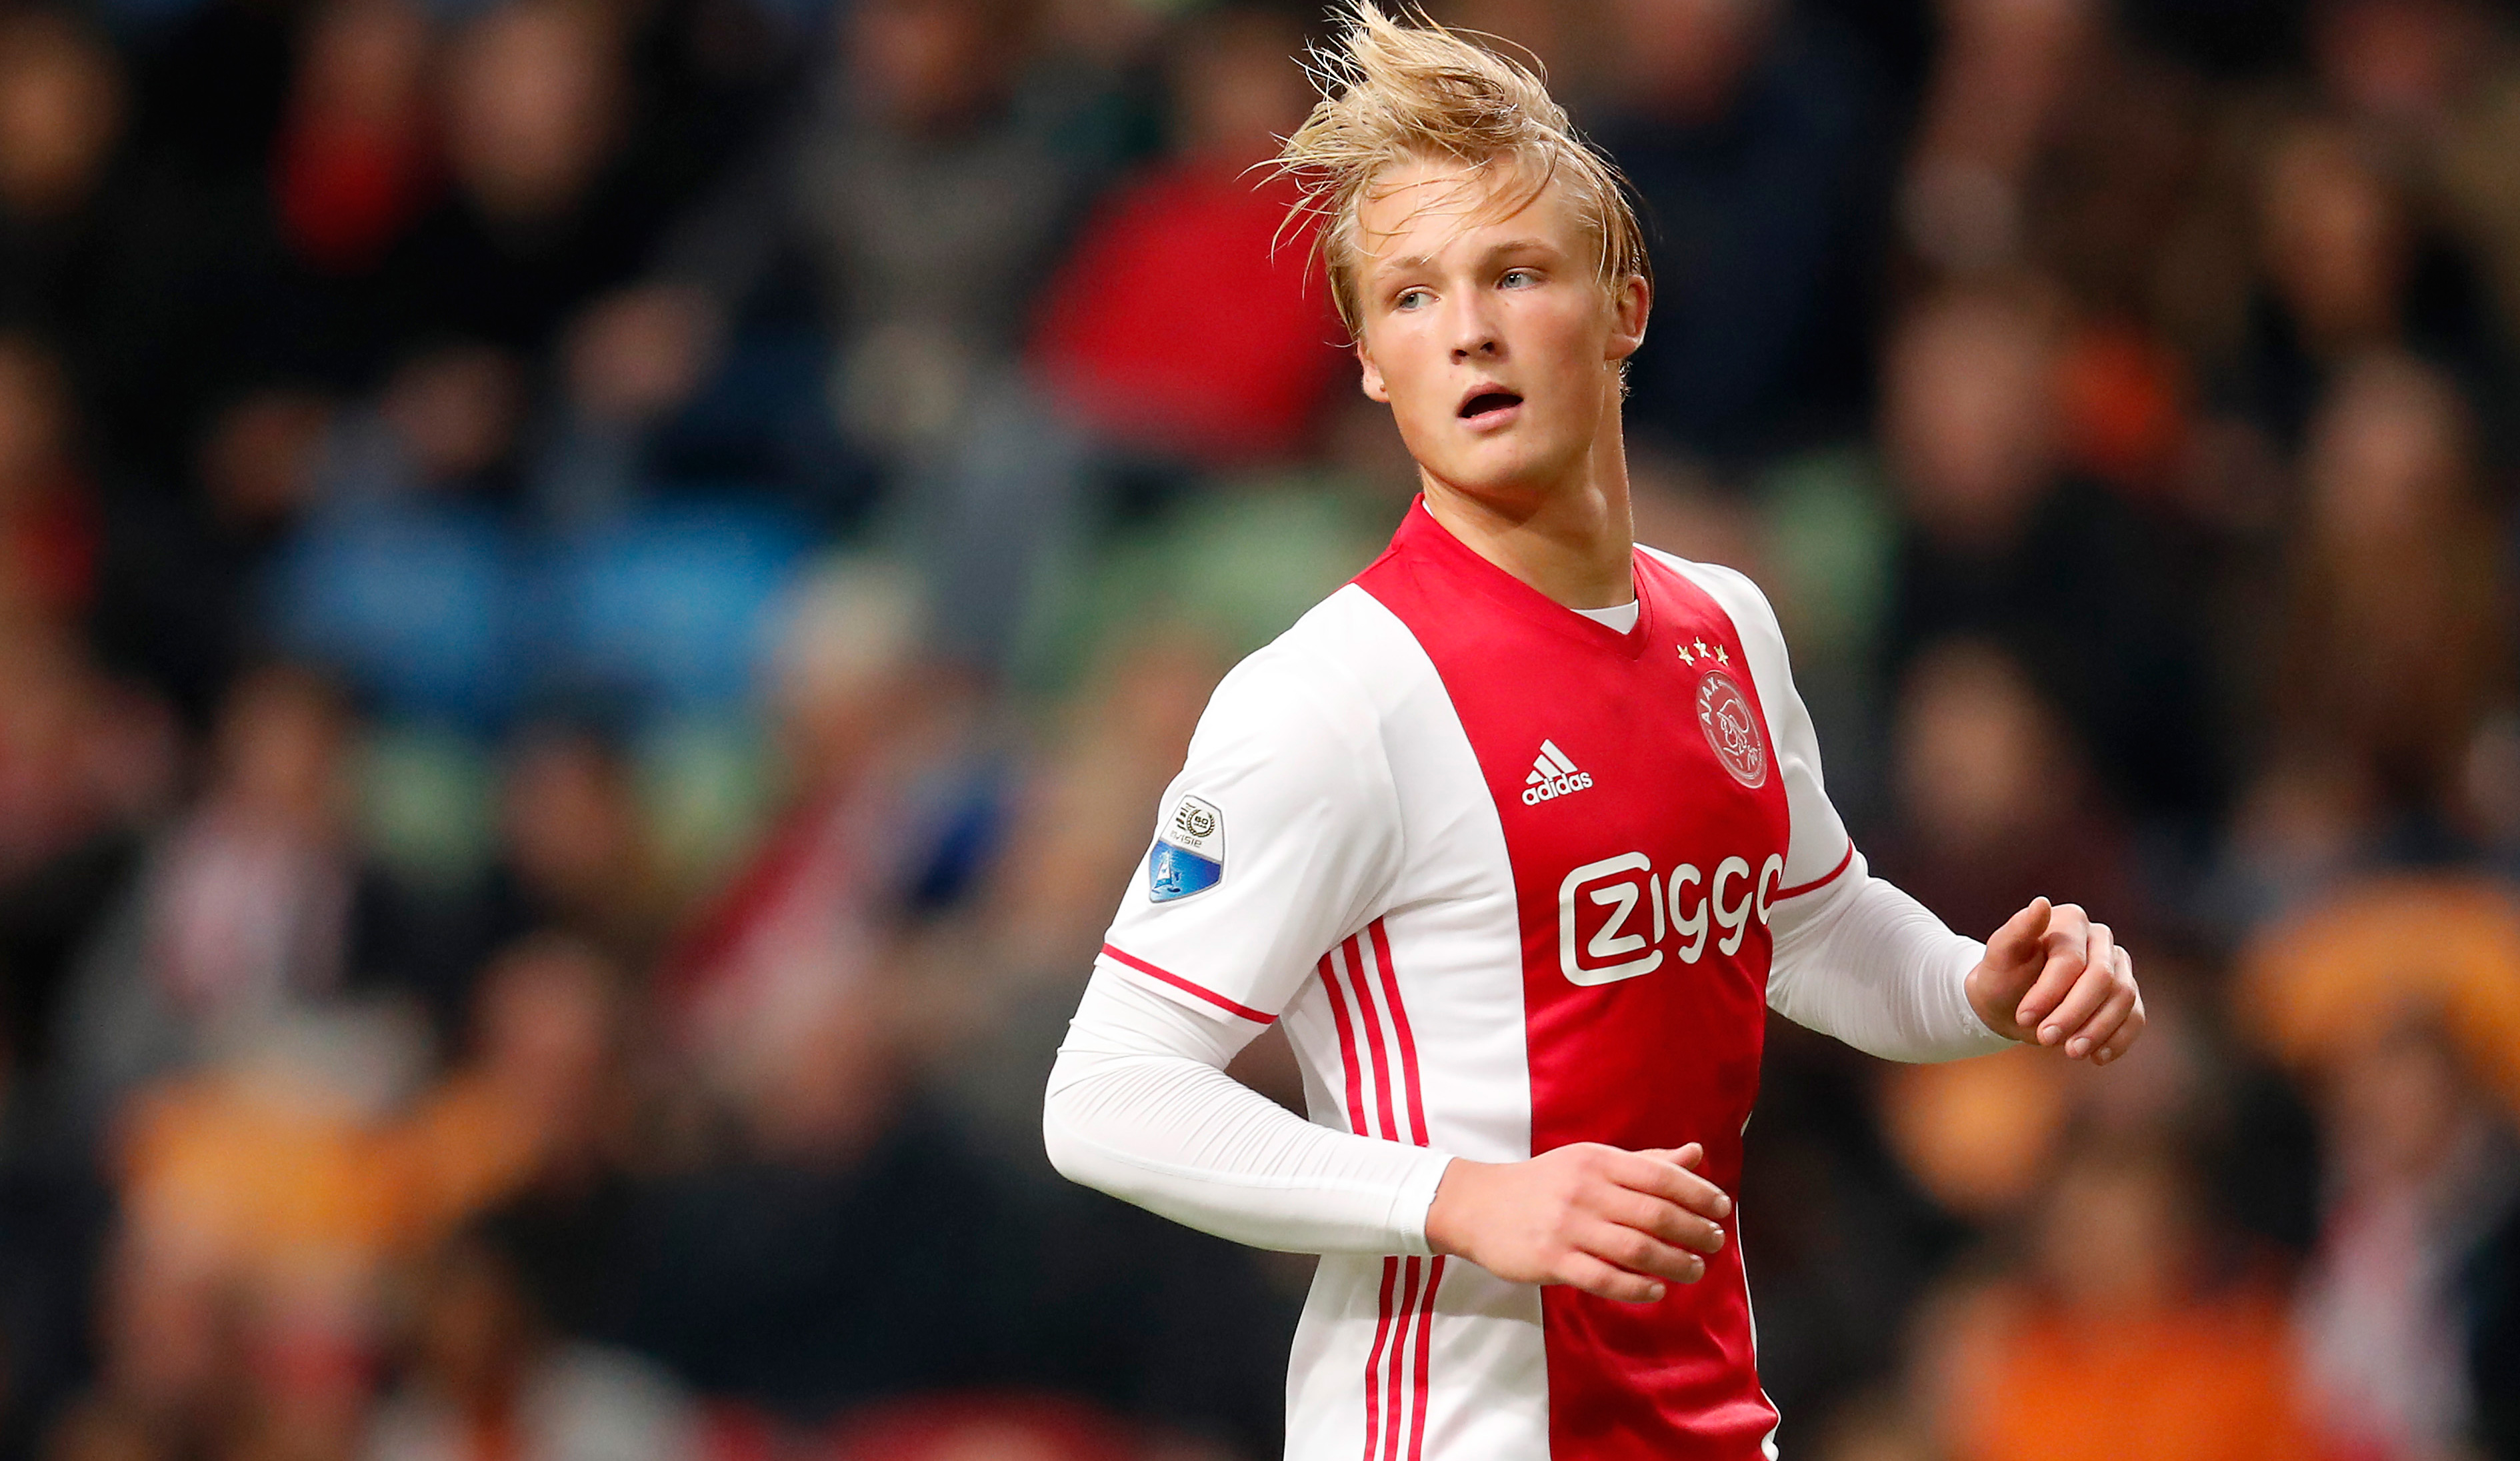 De negentienjarige Kasper Dolberg groeide uit tot de revelatie bij Ajax. De Deen scoorde in de eerste seizoenshelft acht keer in de Eredivisie.